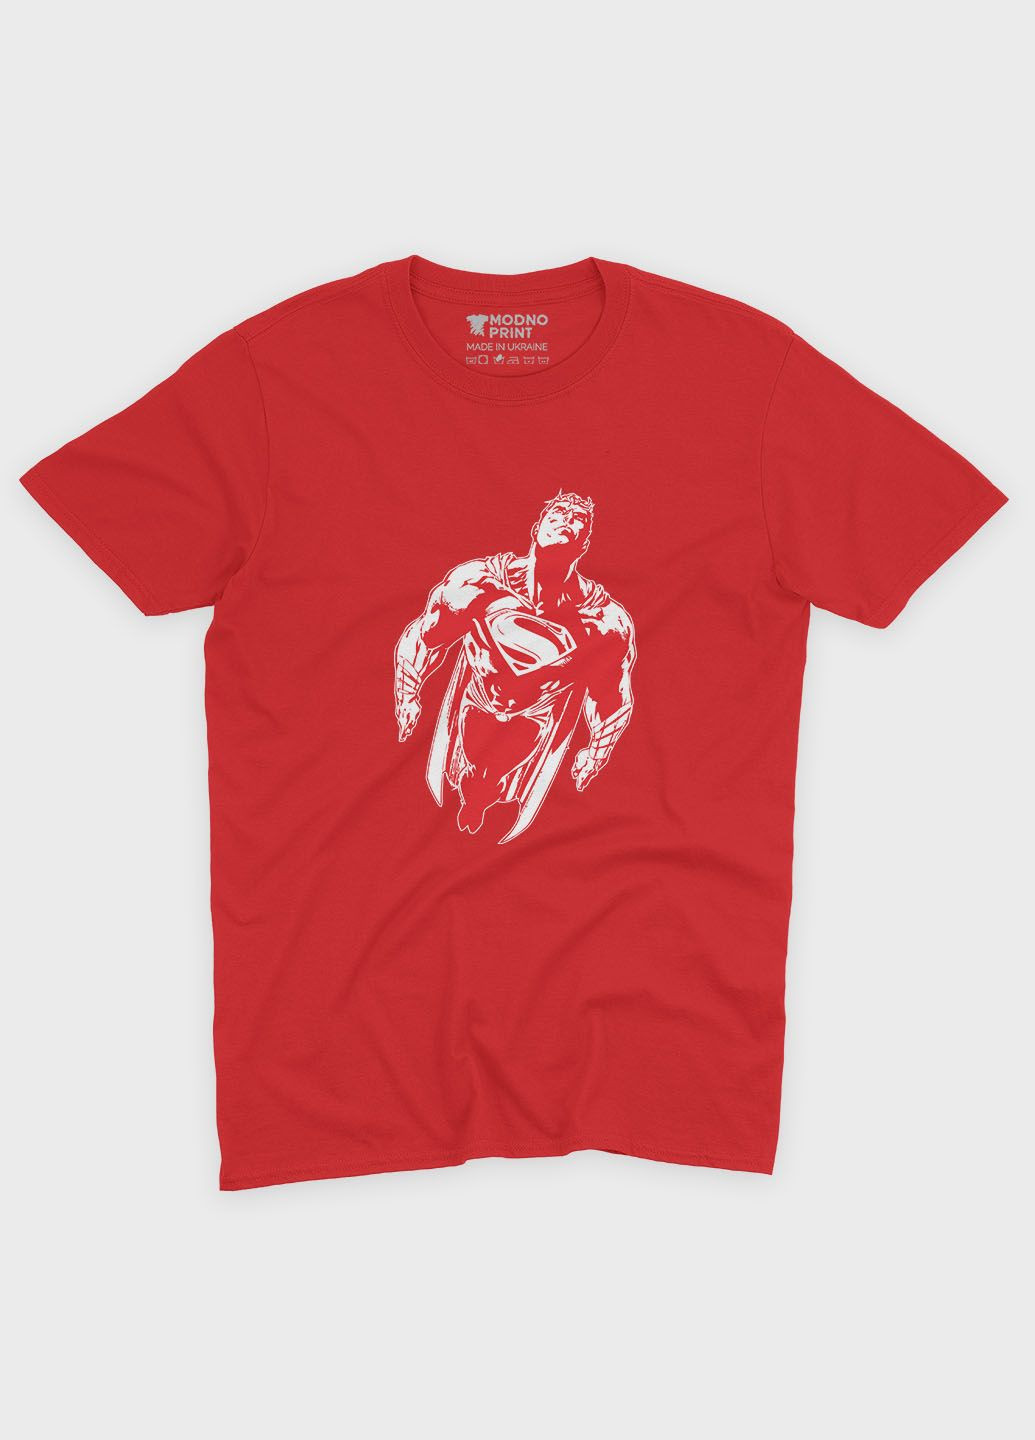 Червона демісезонна футболка для хлопчика з принтом супергероя - супермен (ts001-1-sre-006-009-001-b) Modno